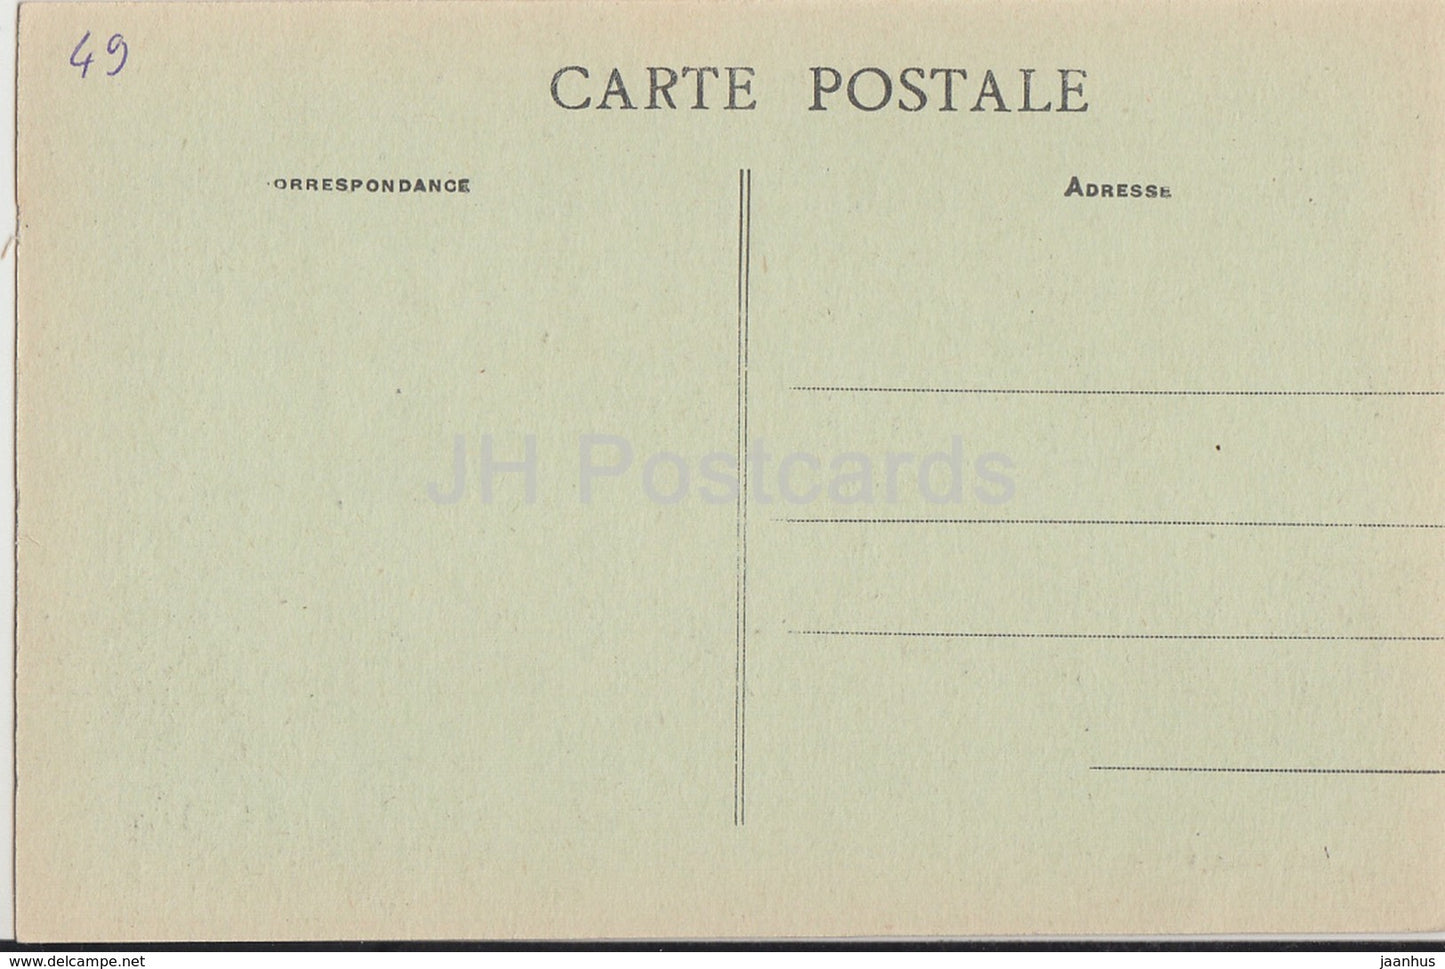 Vieil Bauge - Chateau de Montivert - castle - 6 - old postcard - France - unused